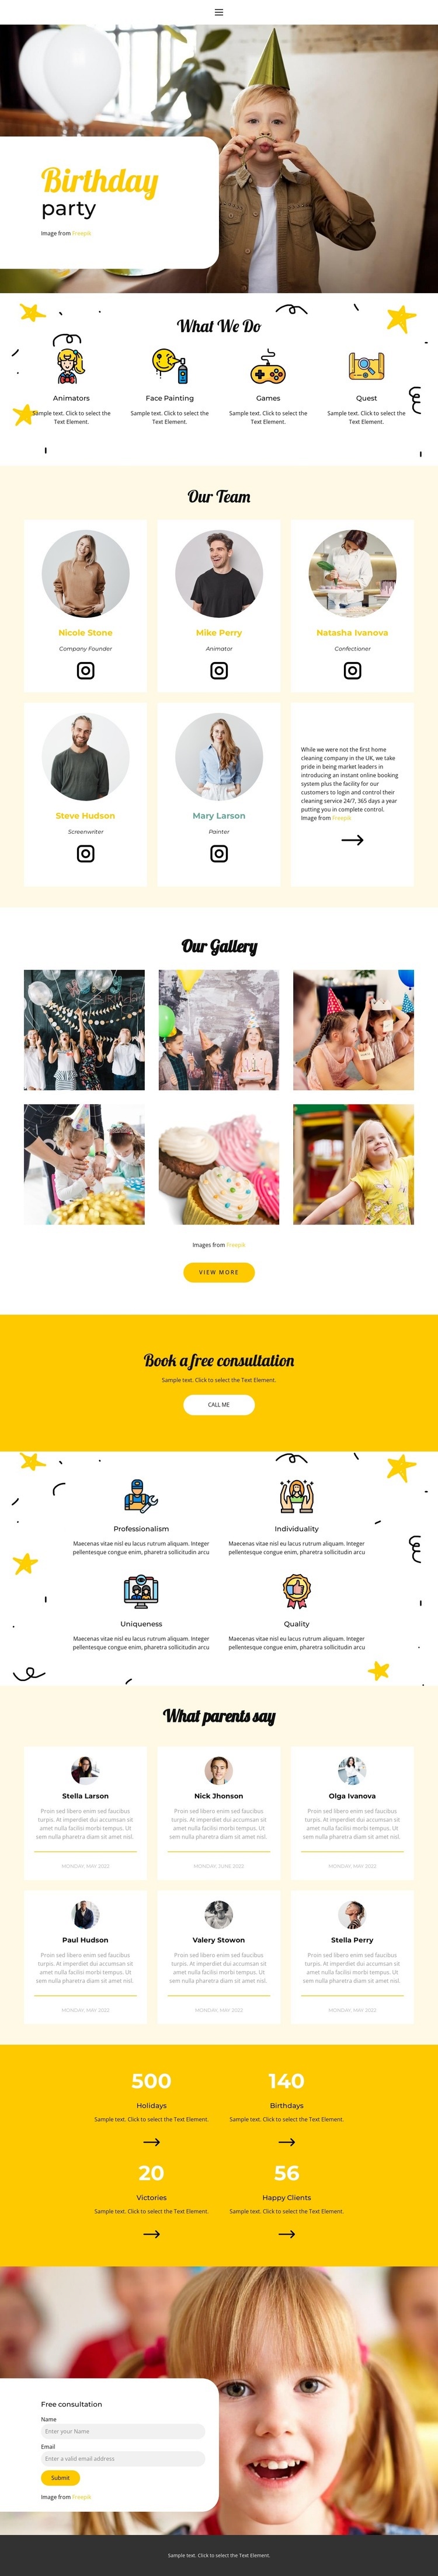 Children's birthday Web Page Design